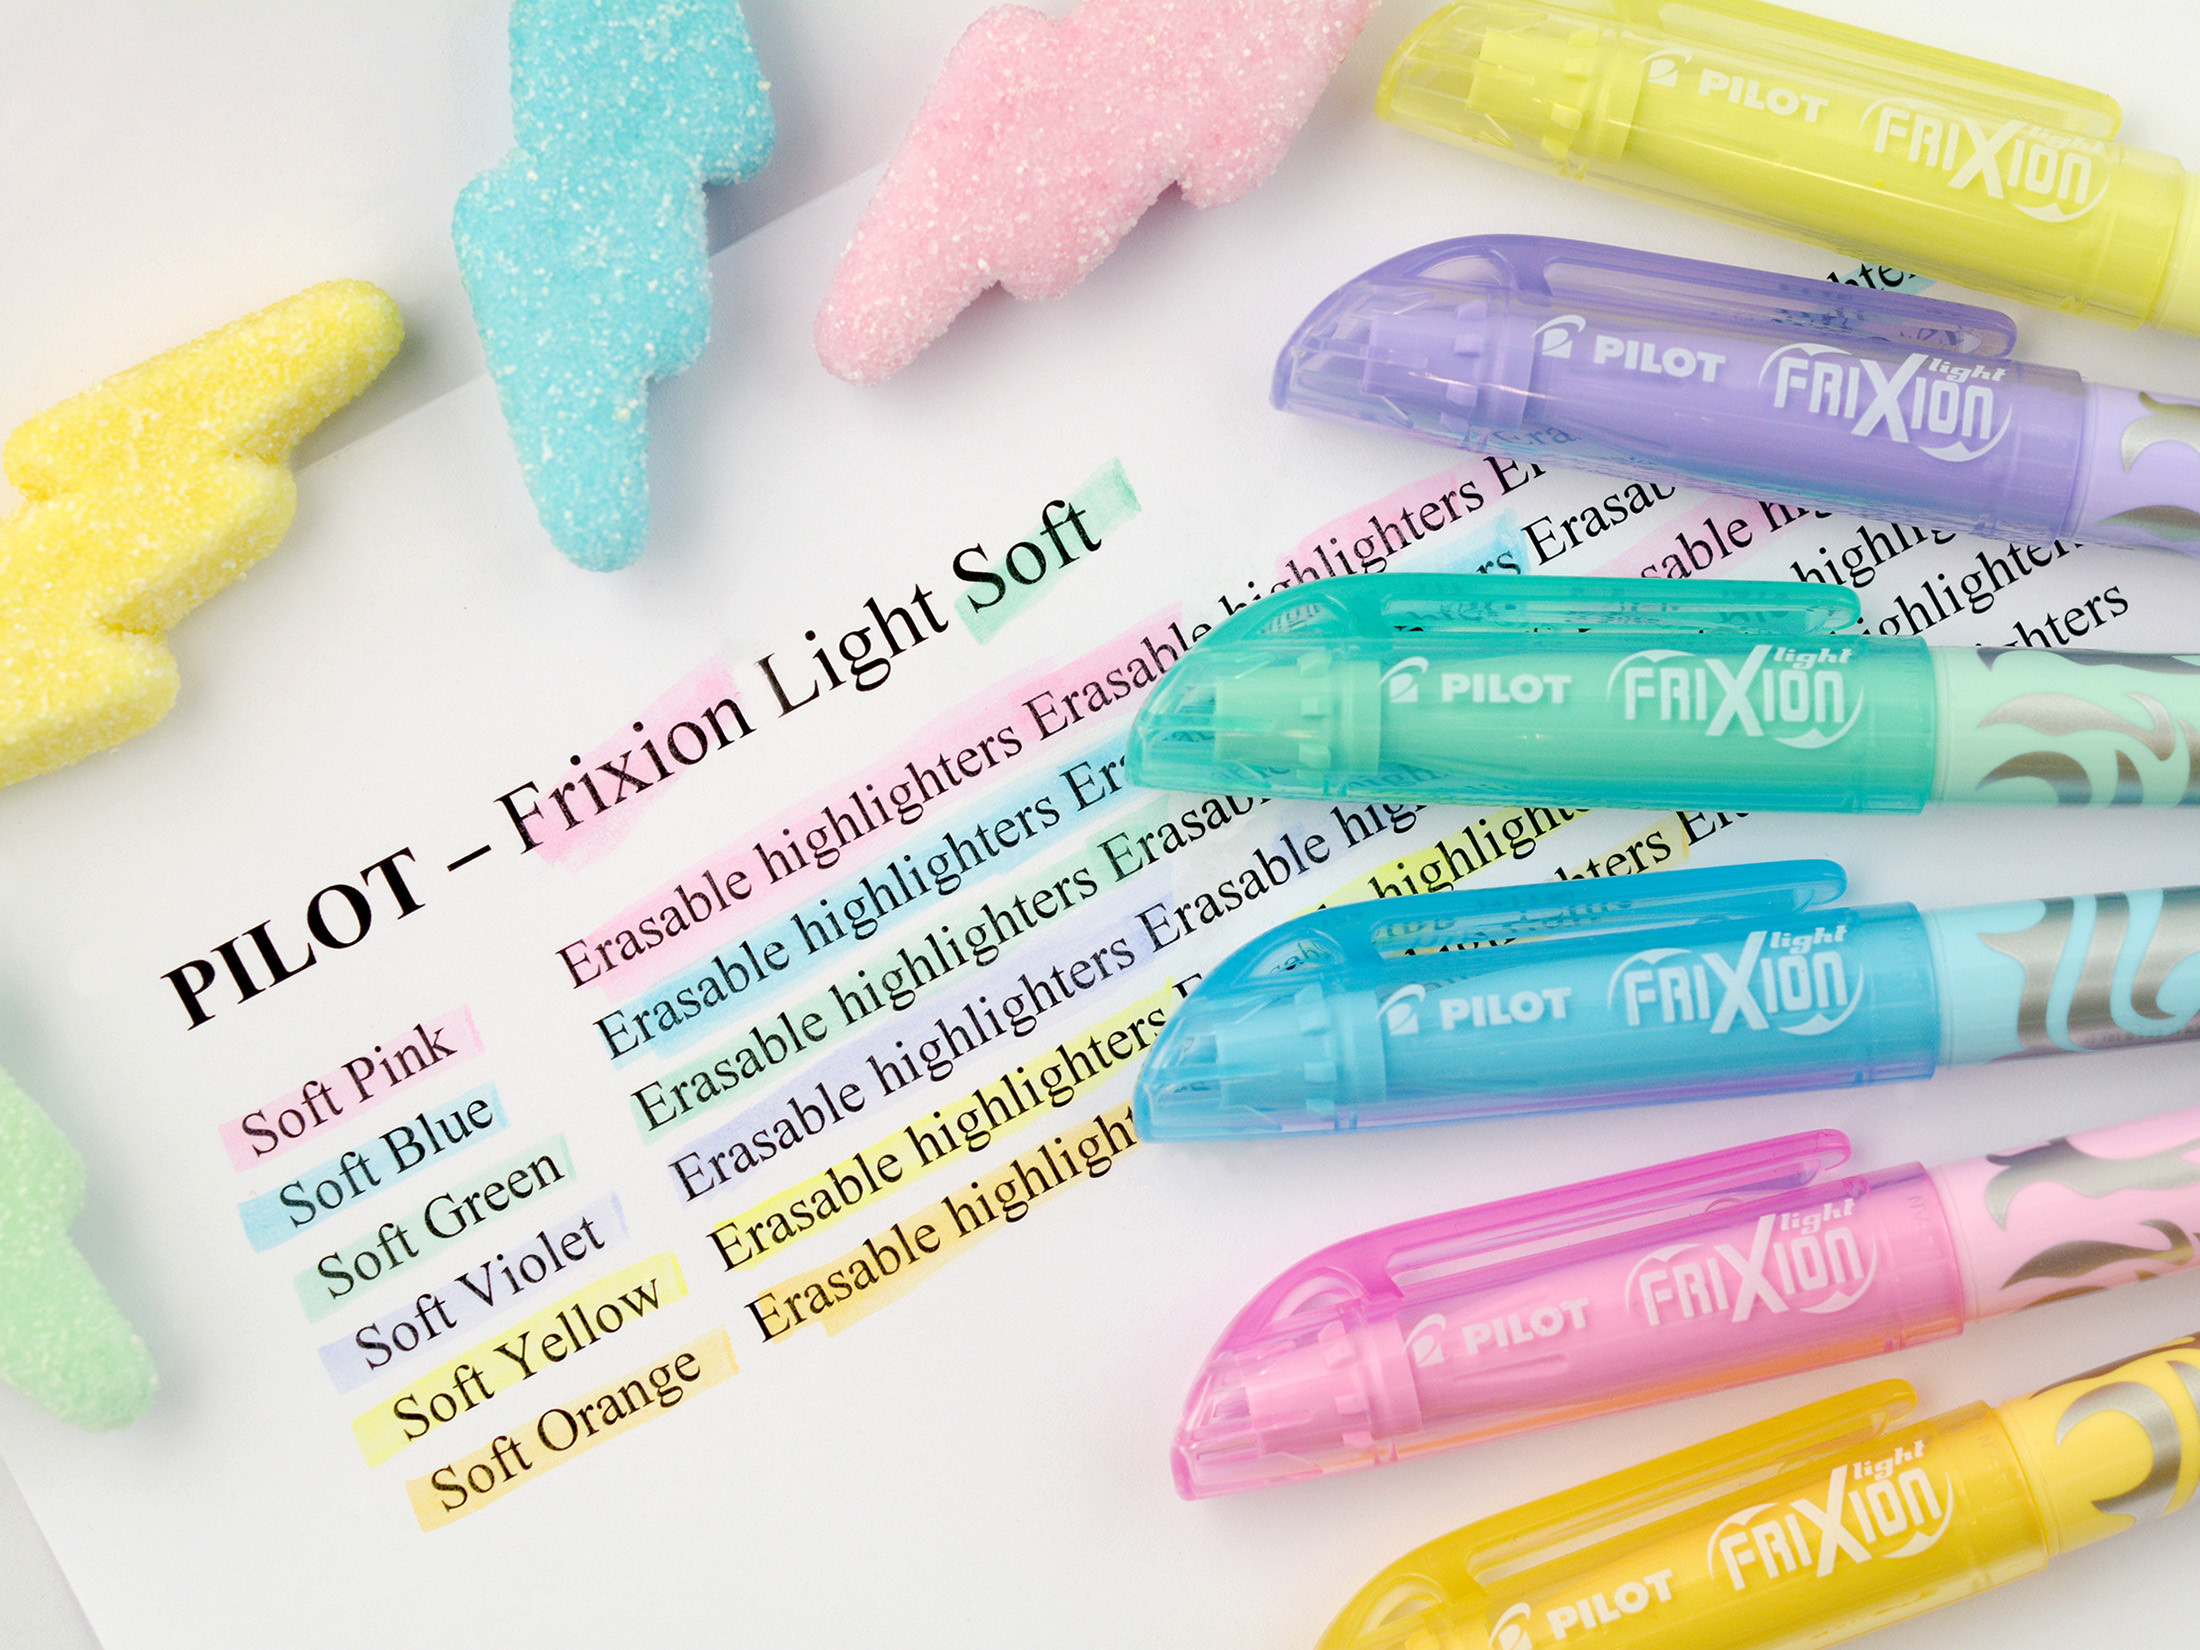 FriXion Light Soft 4.0 (M) 3er Set